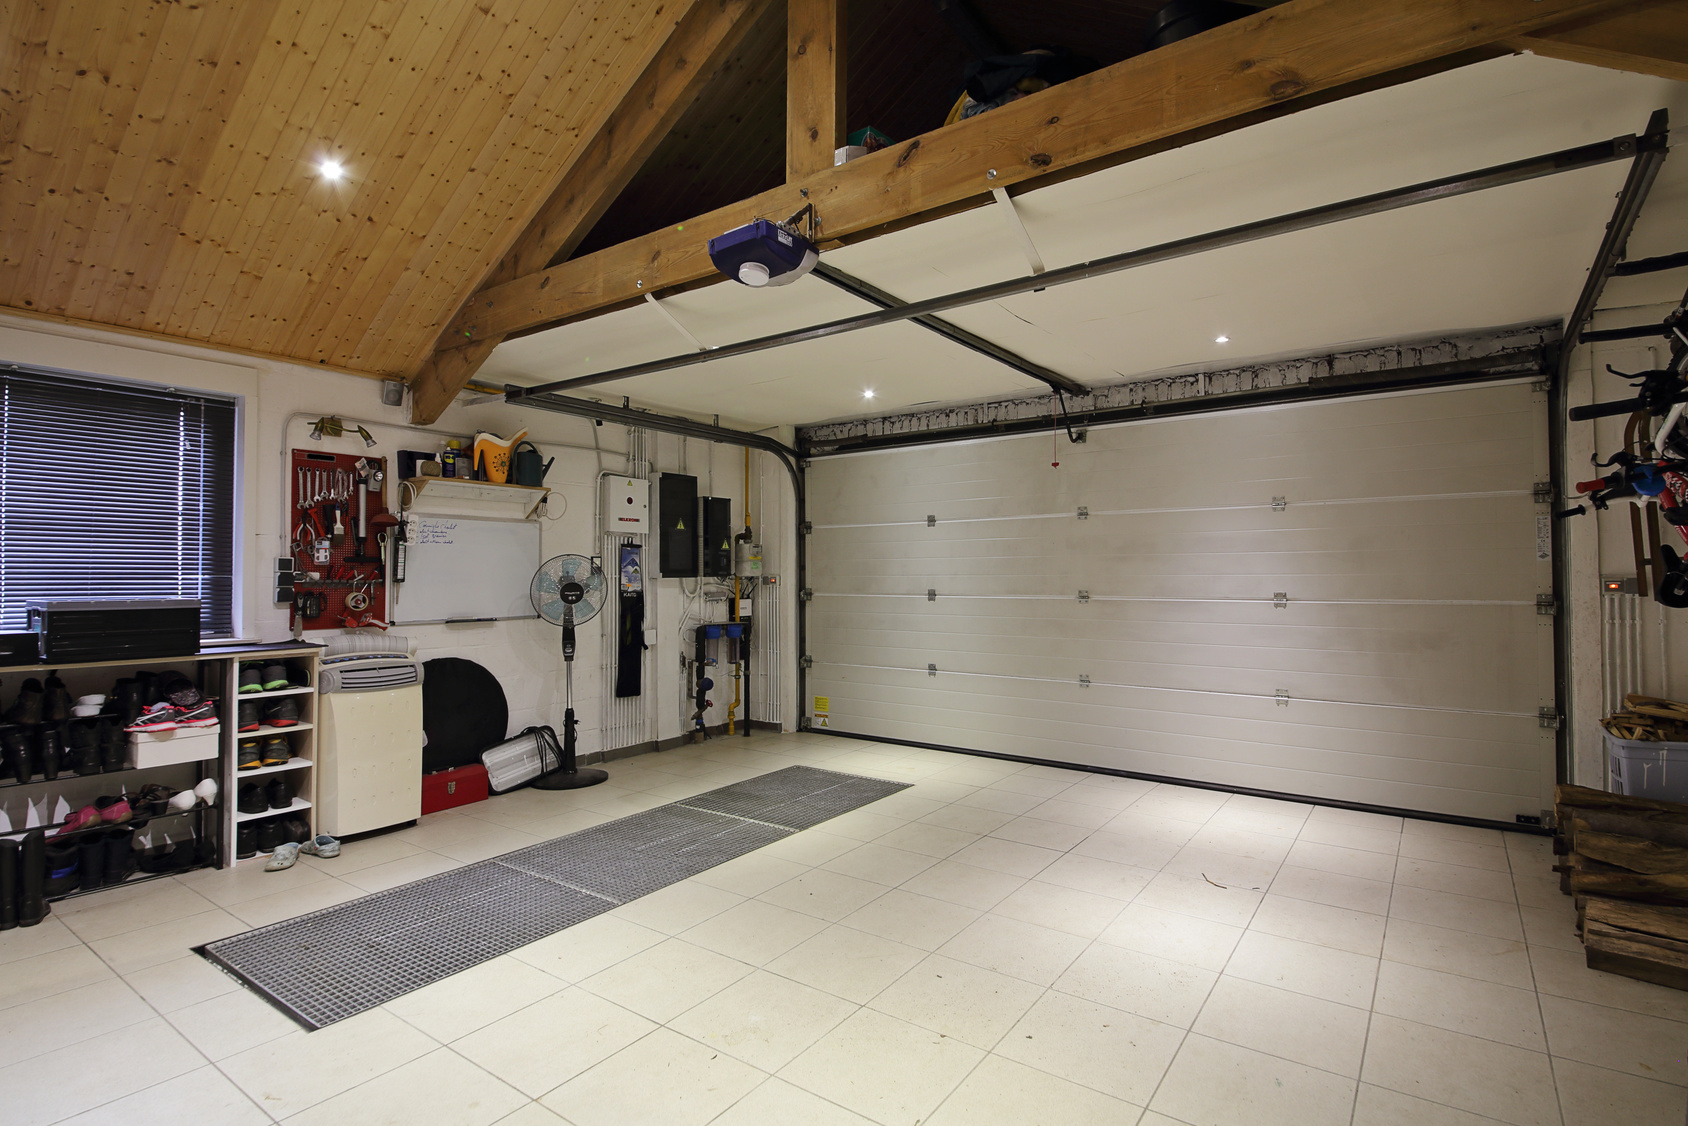 Garaje: cómo hacer almacenaje en el techo para ahorrar espacio.